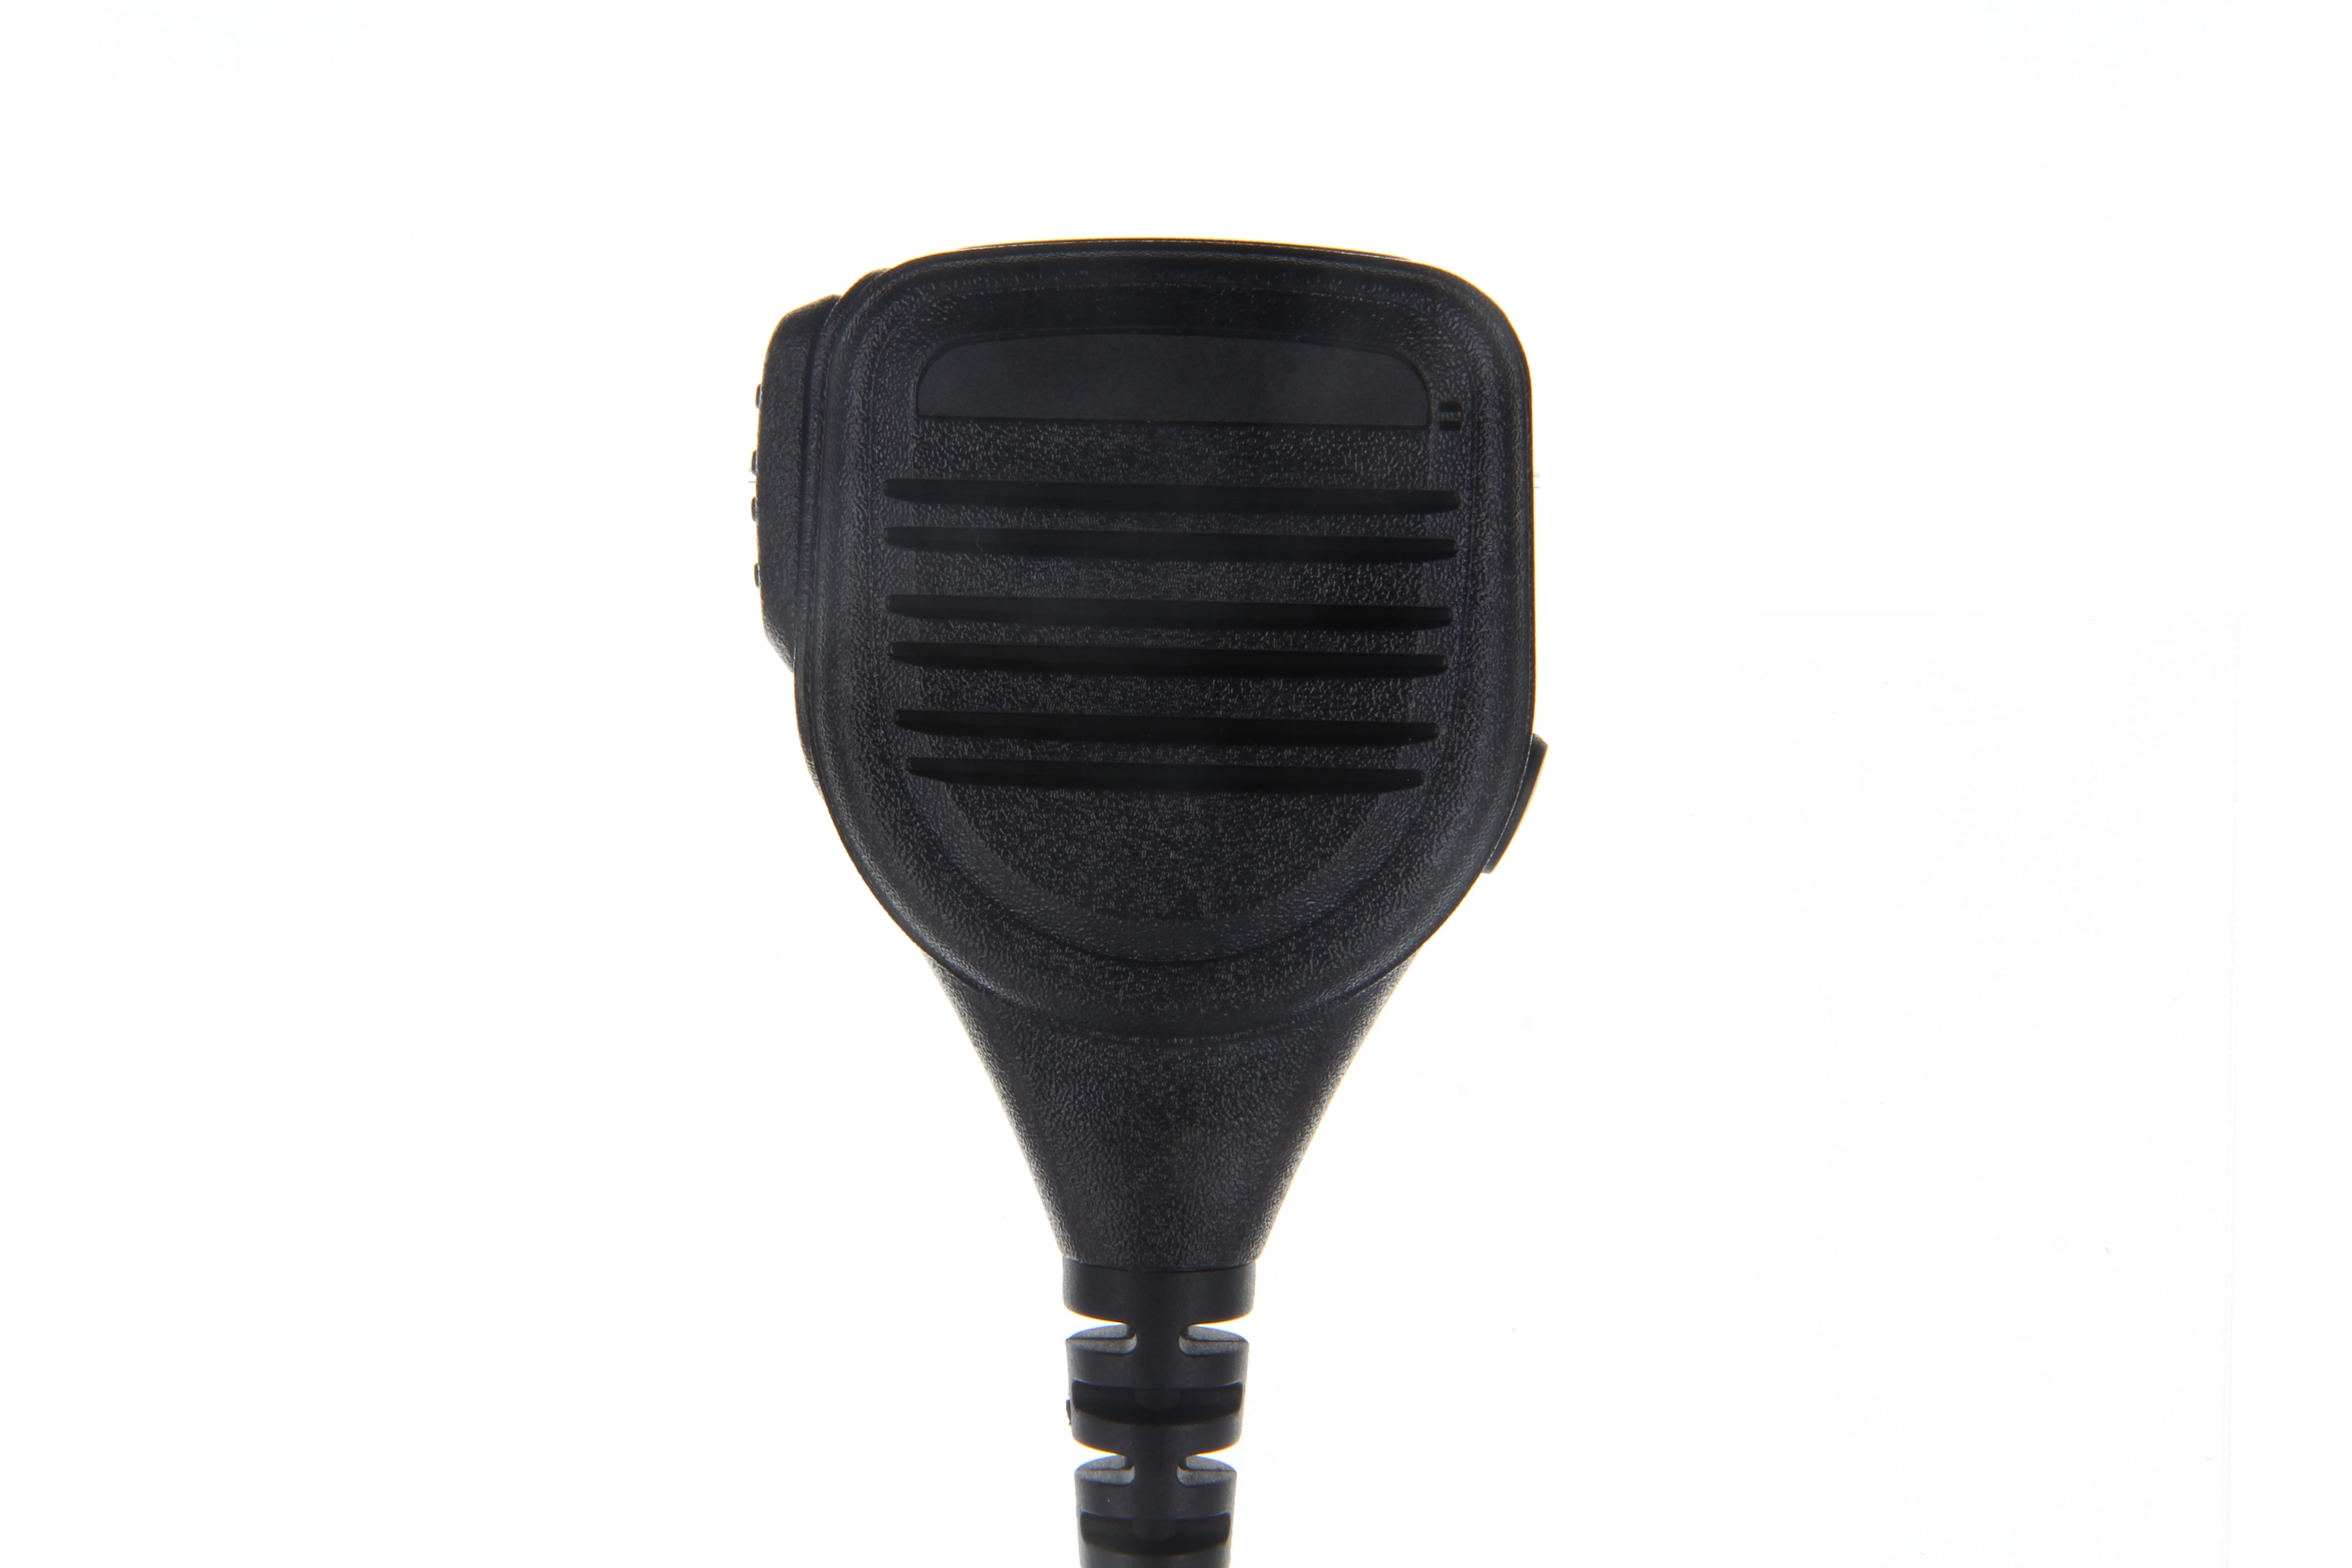 CoPacks Lautsprechermikrofon GE-XM03 passend für ICOM IC-F3261, IC-F3262, IC-F4261, IC-F4262